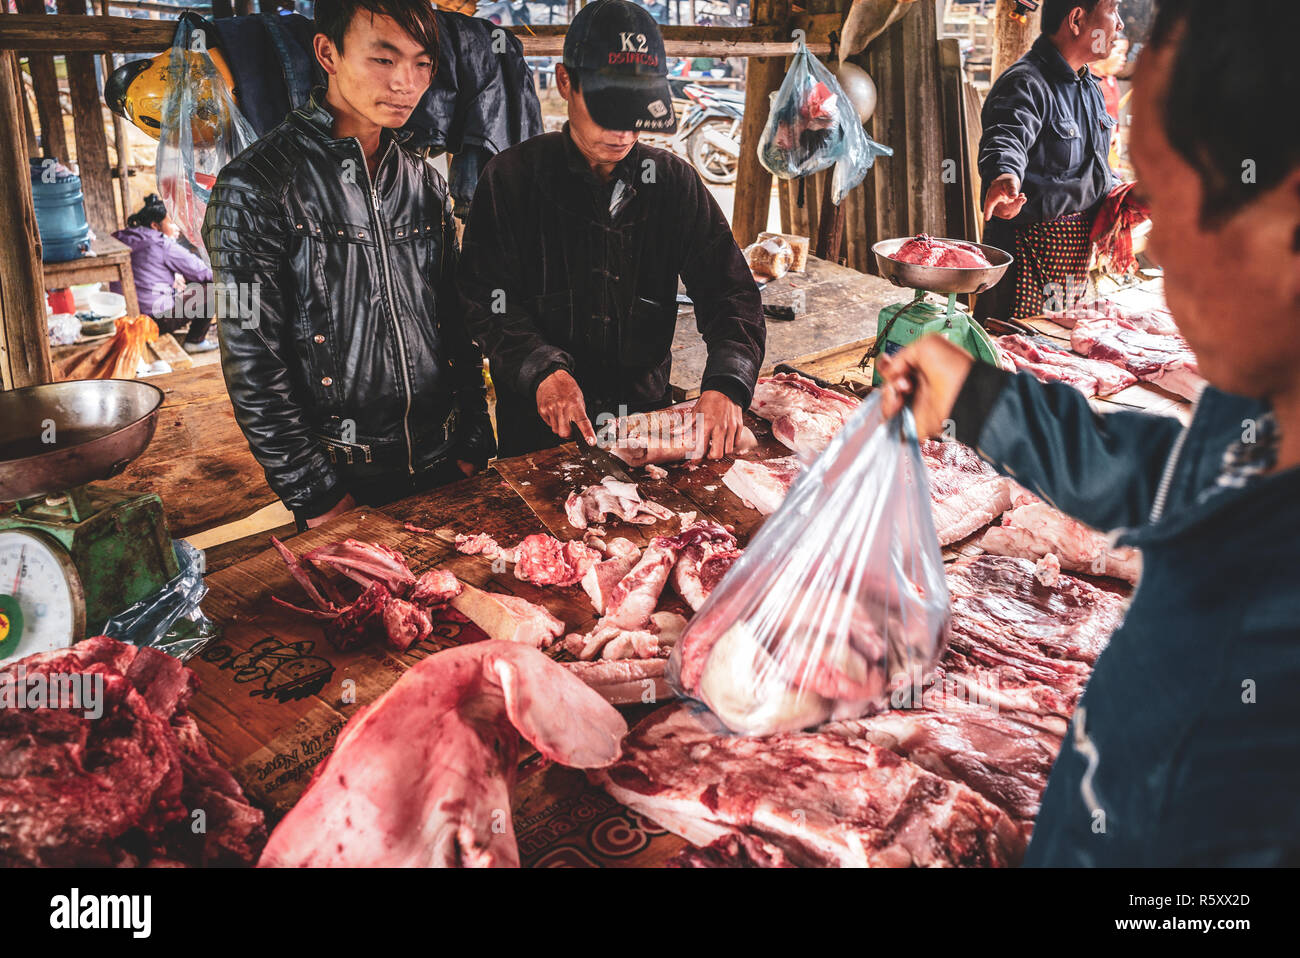 Scènes du marché CAN Cau dans le nord de Vietnam Banque D'Images